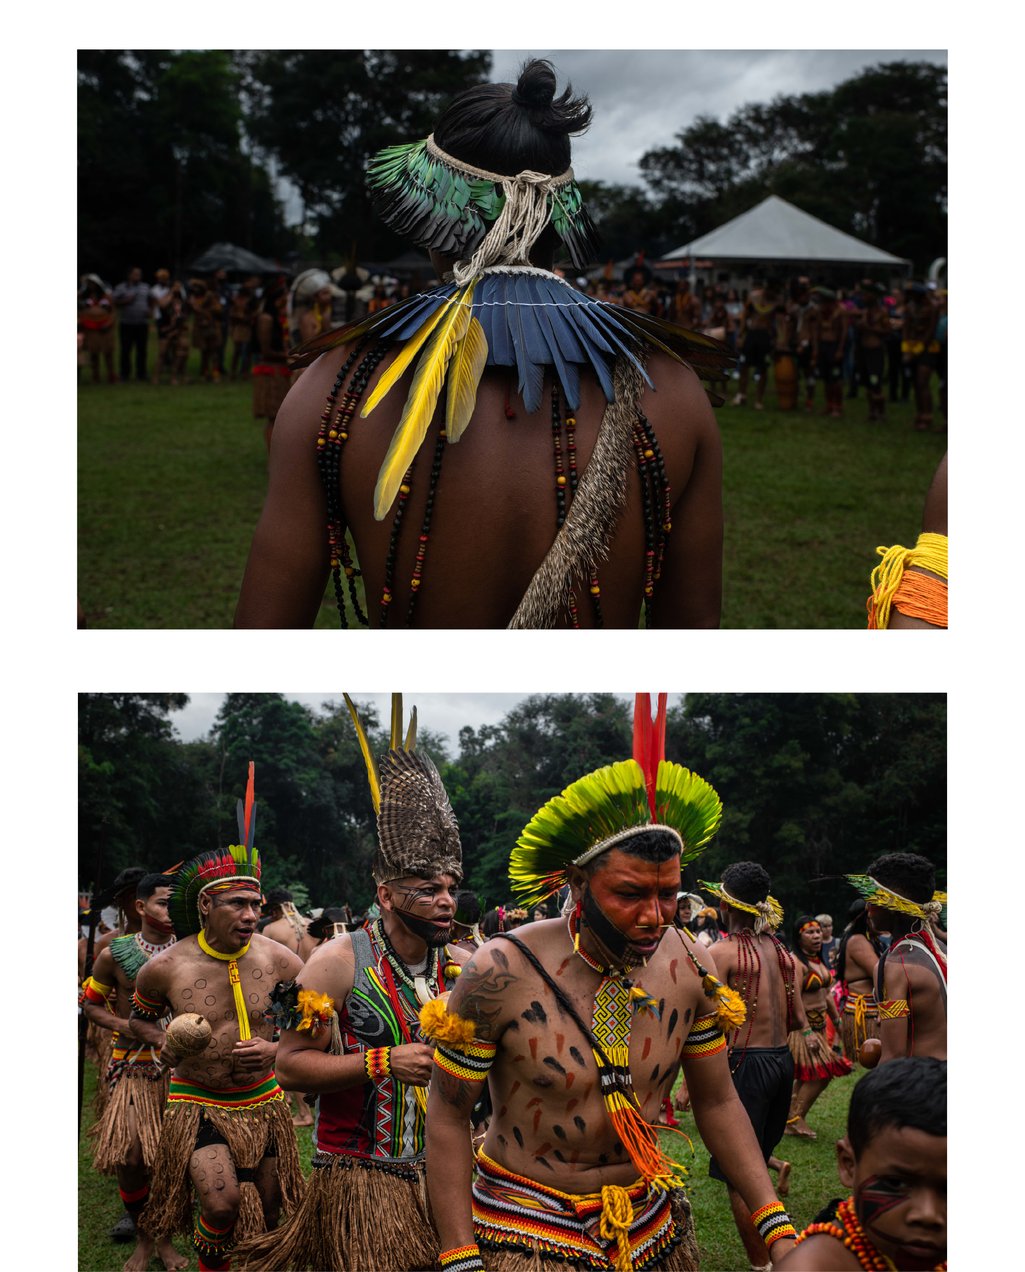 Un grupo de indígenas con adornos baila y canta en una ceremonia durante las celebraciones del Día de los Pueblos Indígenas, en la Aldeia Katurãma, São Joaquim de Bicas, Minas Gerais, Brasil.